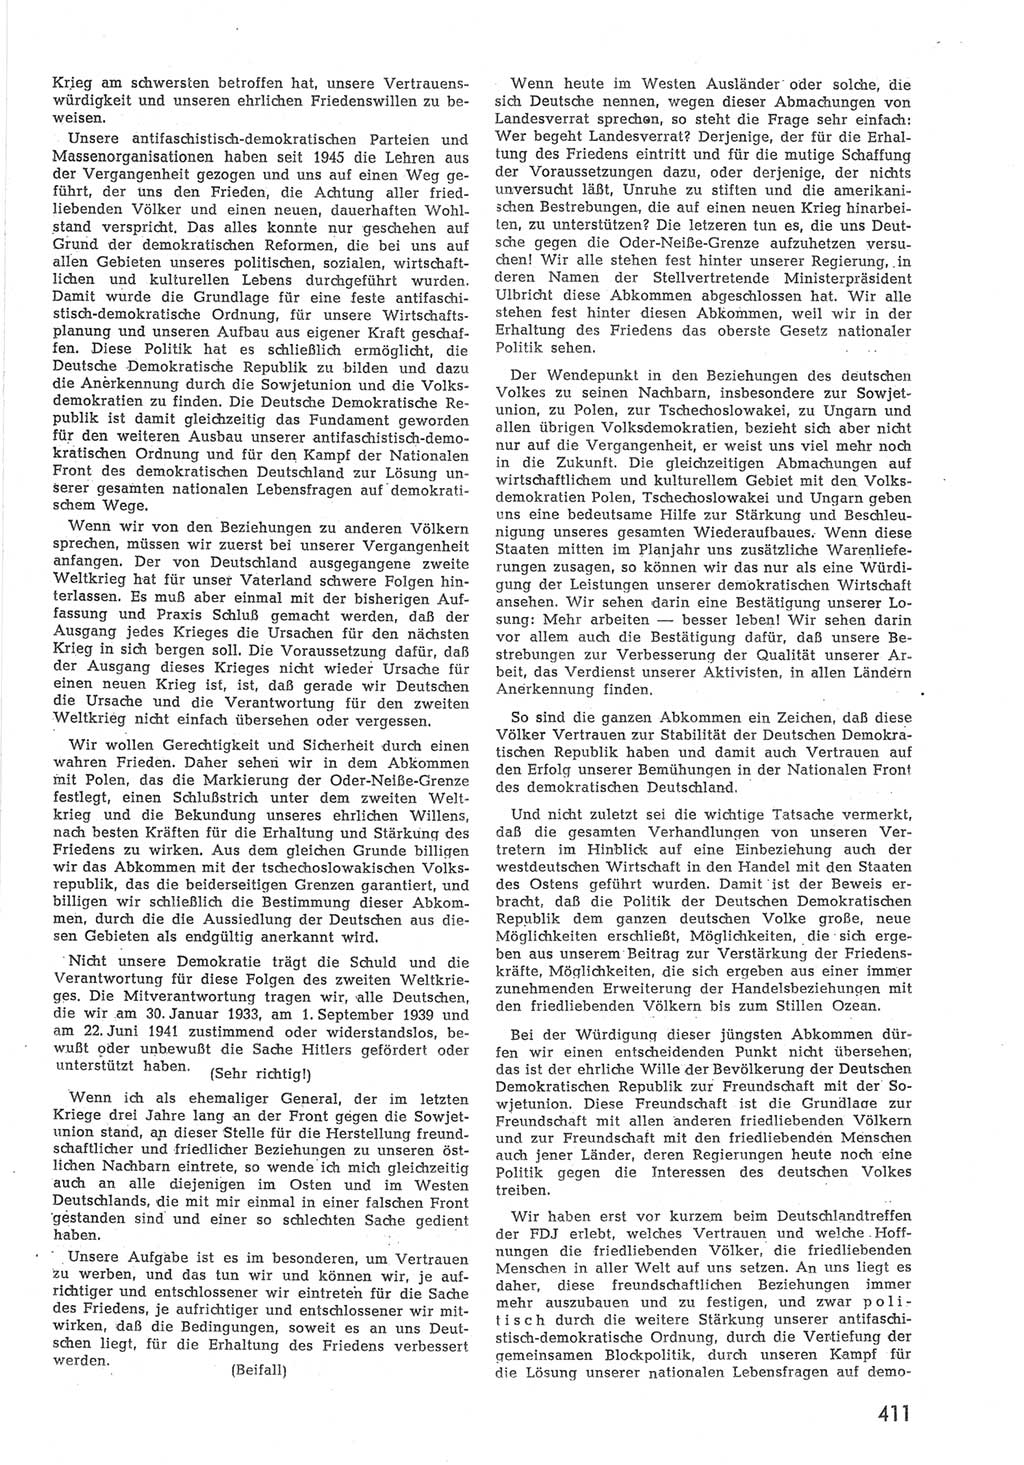 Provisorische Volkskammer (VK) der Deutschen Demokratischen Republik (DDR) 1949-1950, Dokument 429 (Prov. VK DDR 1949-1950, Dok. 429)